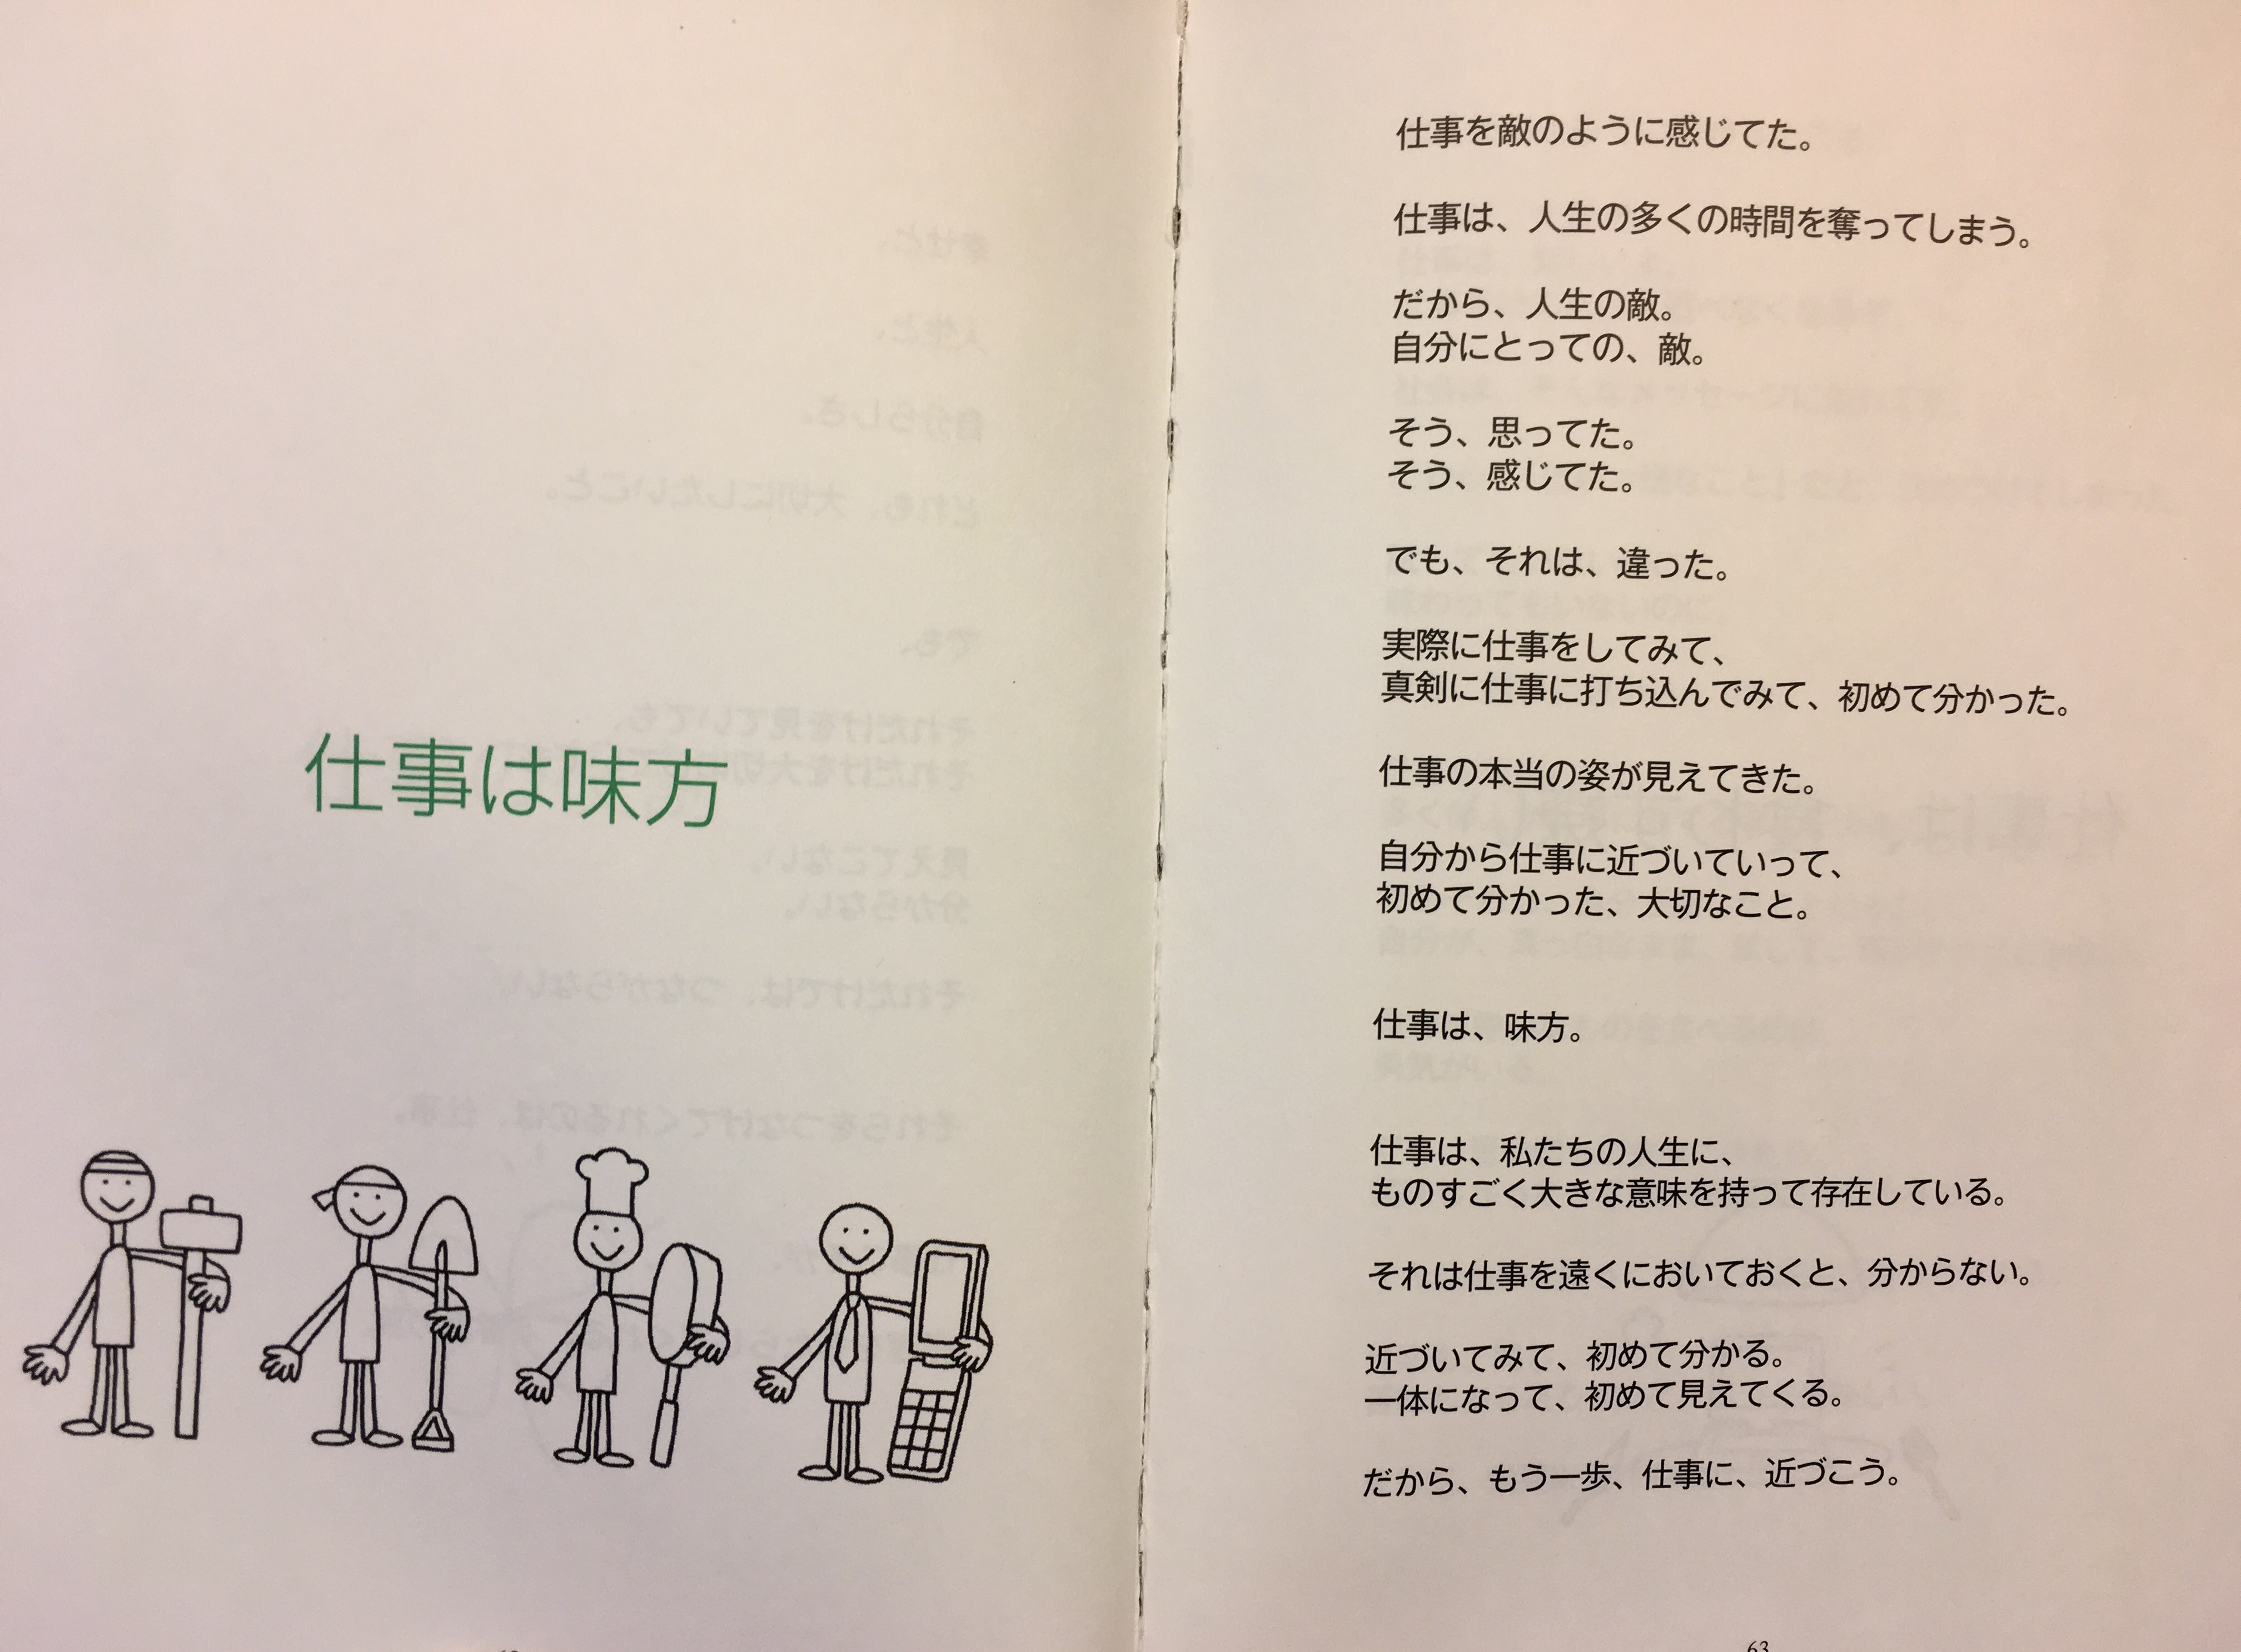 浜口隆則の経営論『仕事は味方』Vol.22:仕事は味方